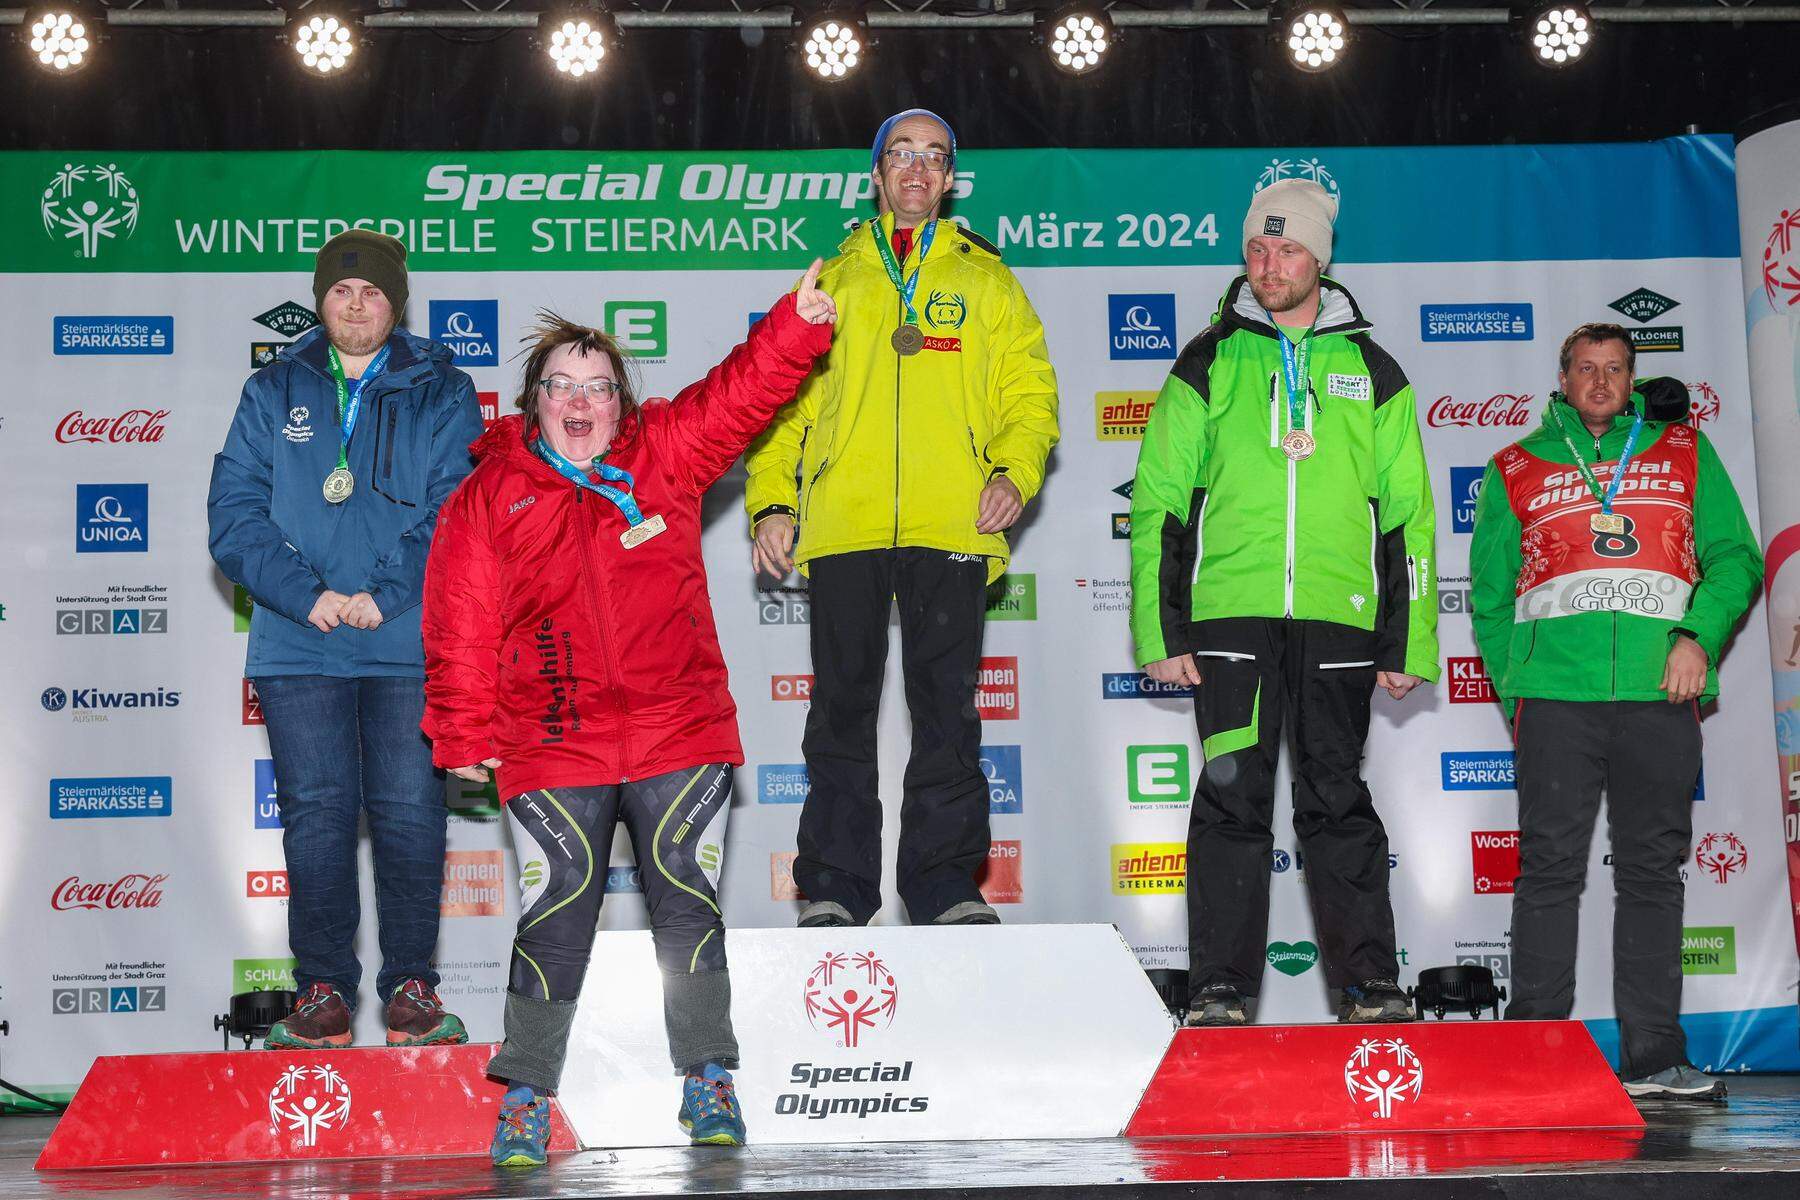 Fotos der Special Olympics : Große Momente bei der Winterspiele-Siegerehrung